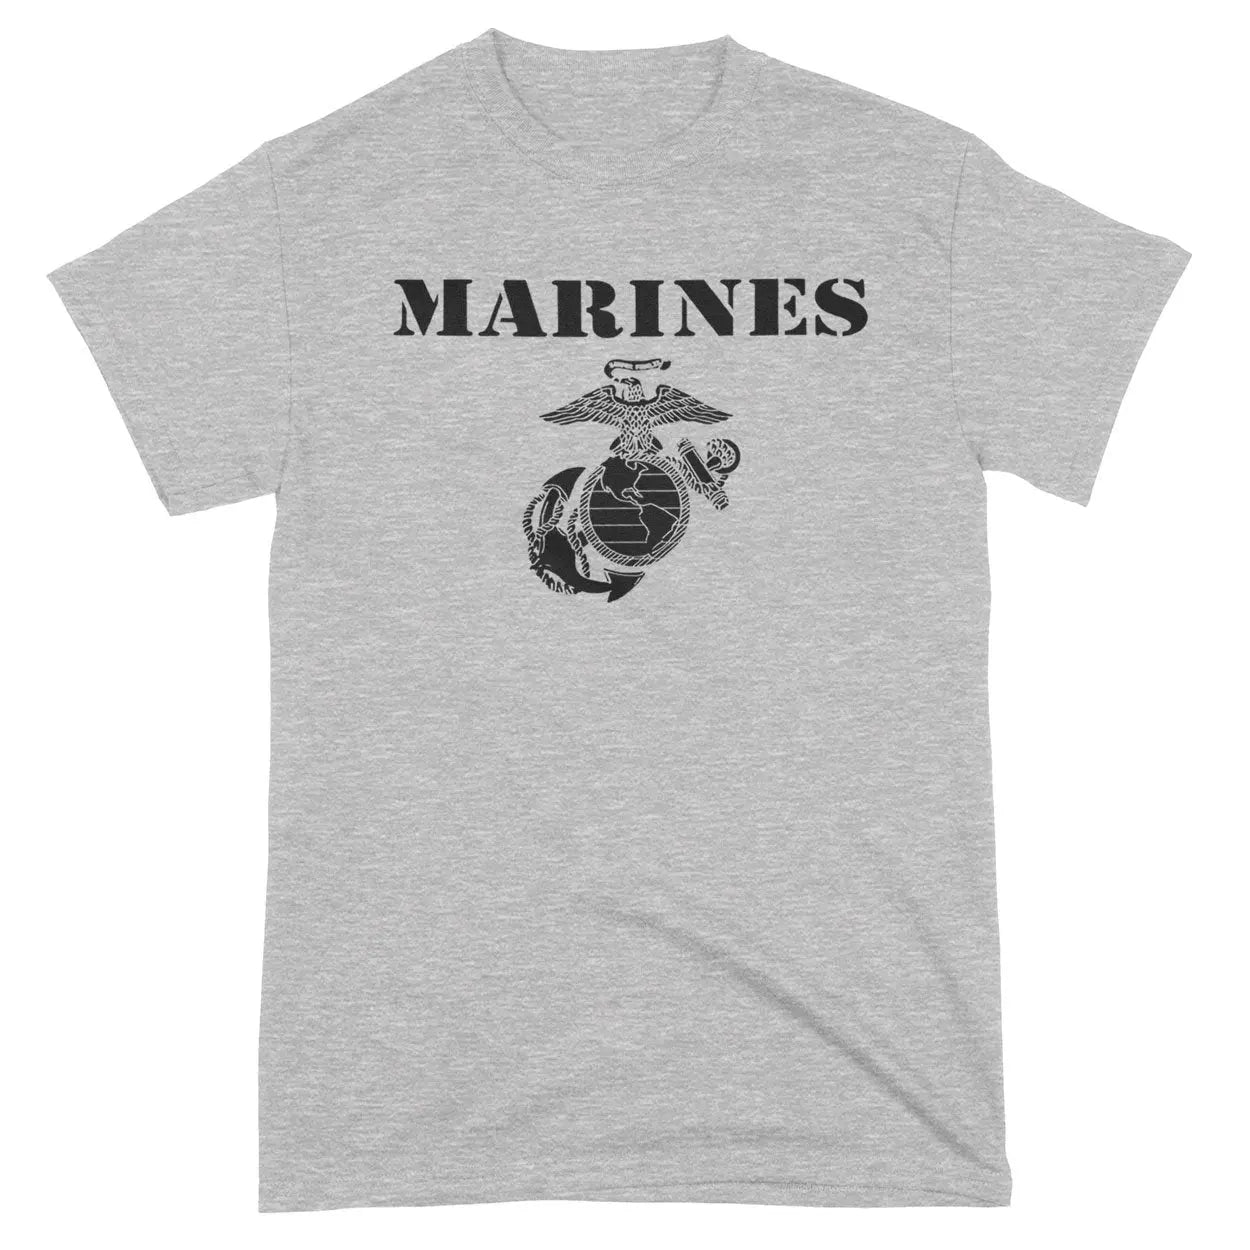 Vintage Marines Tee